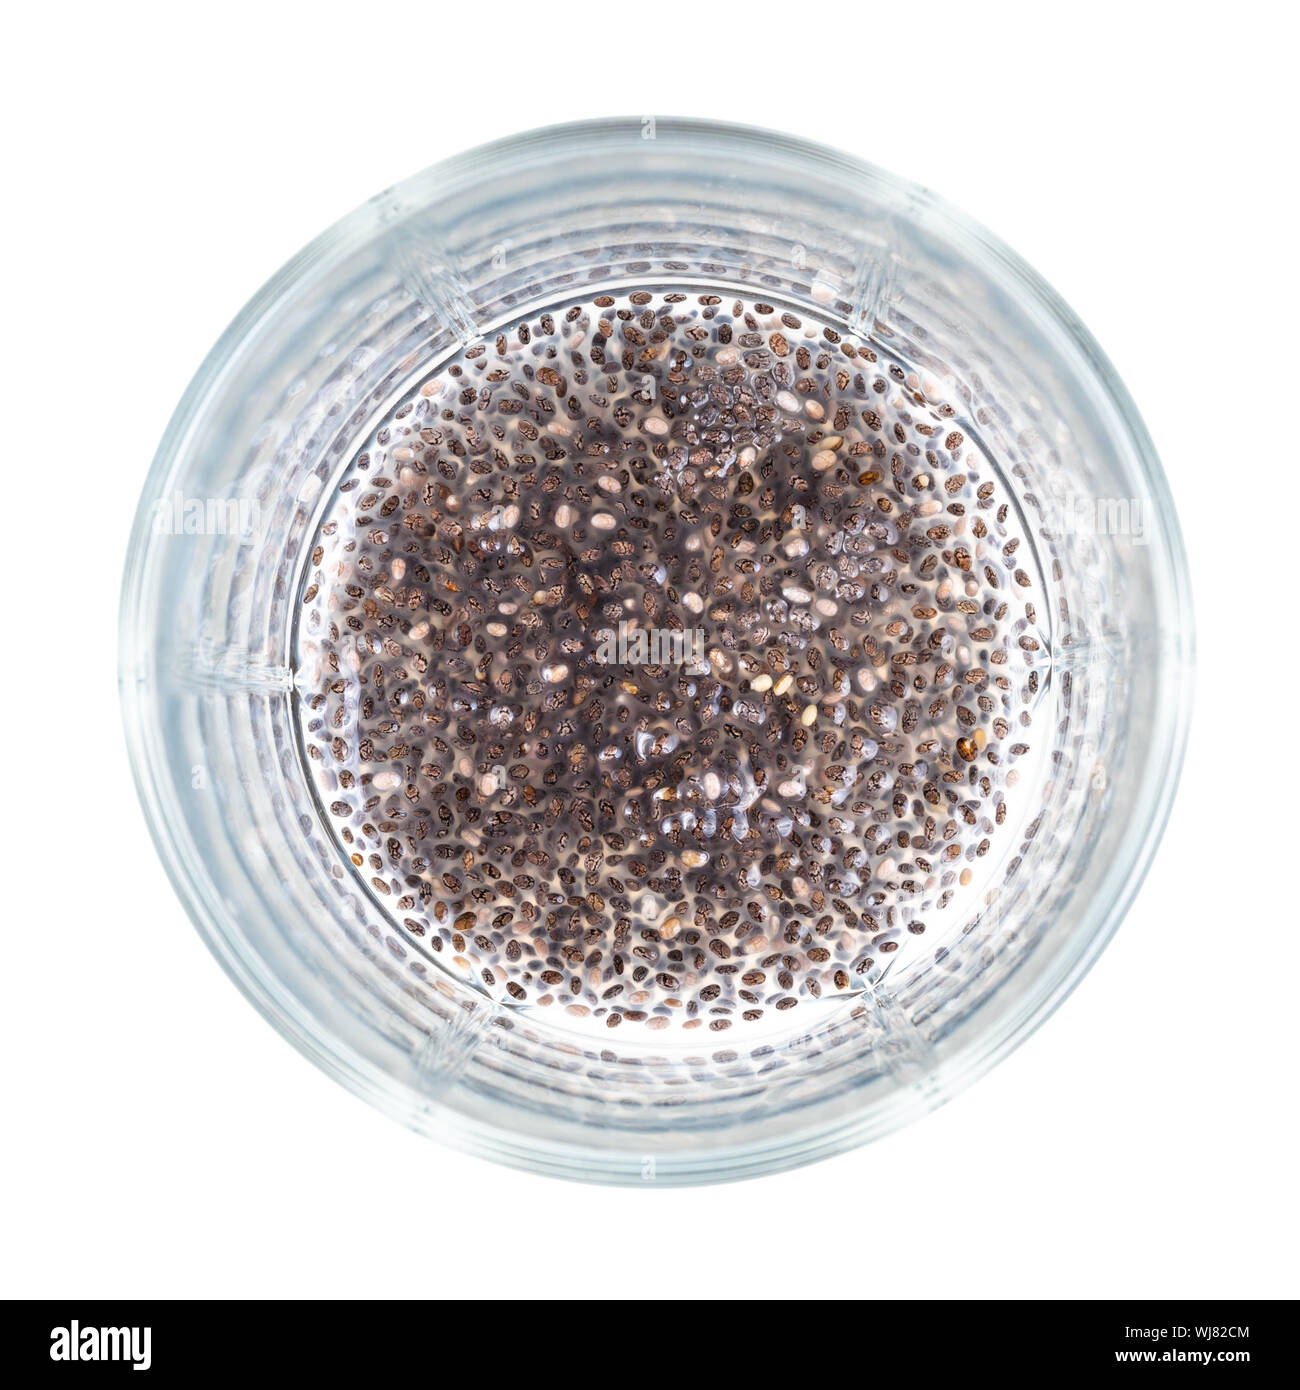 Blick von oben auf die Chia Samen absorbiert Wasser und Schleim Substanz an der Unterseite des Becherglas Ausschnitt auf weißem Hintergrund Stockfoto